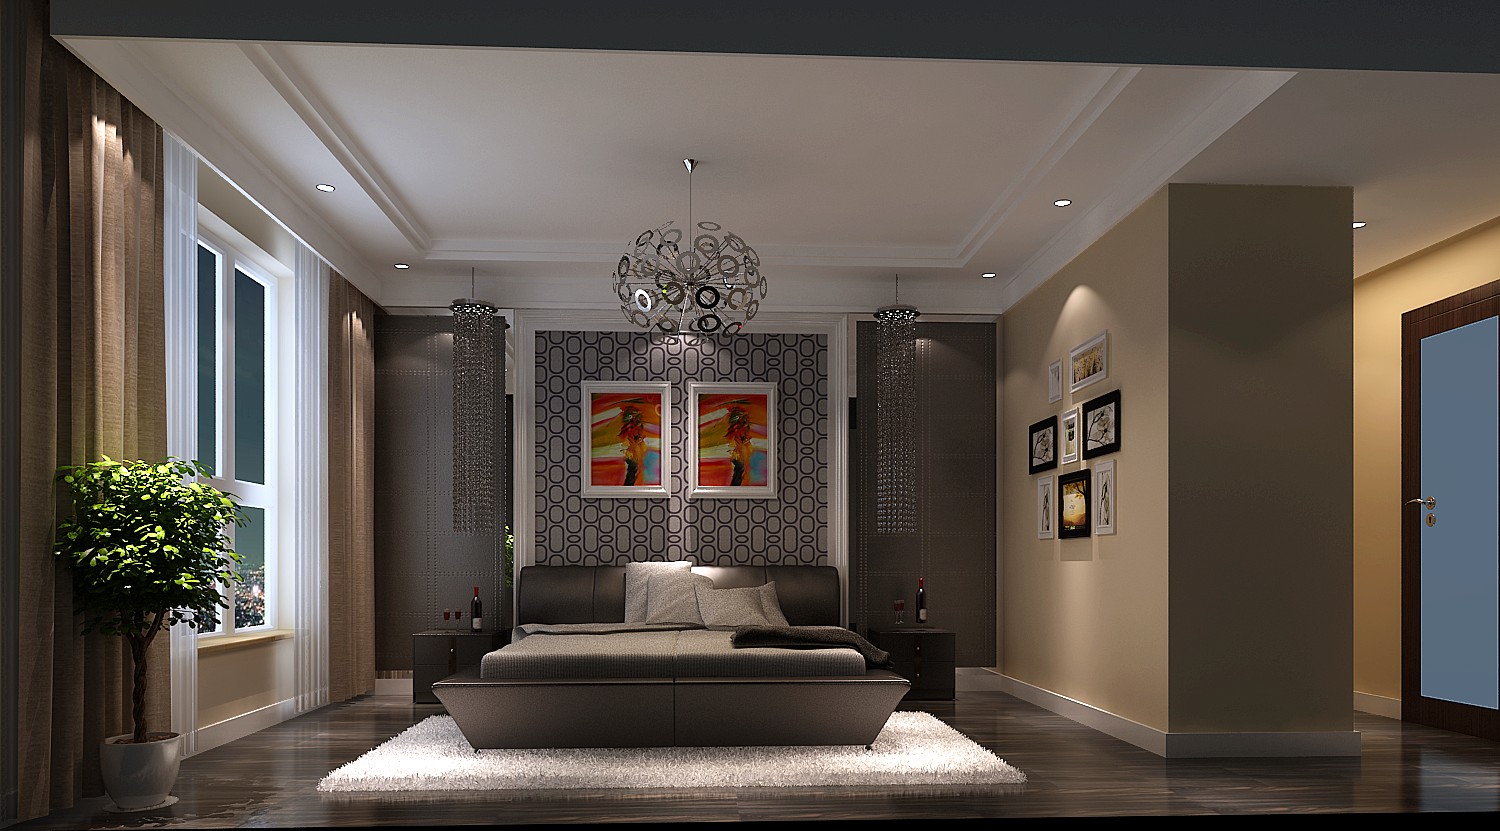 三居 简约 精致 个性 独特 完美 格调 舒适 实用 卧室图片来自重庆高度国际装饰工程有限公司在金隅翡丽-简约风格的分享